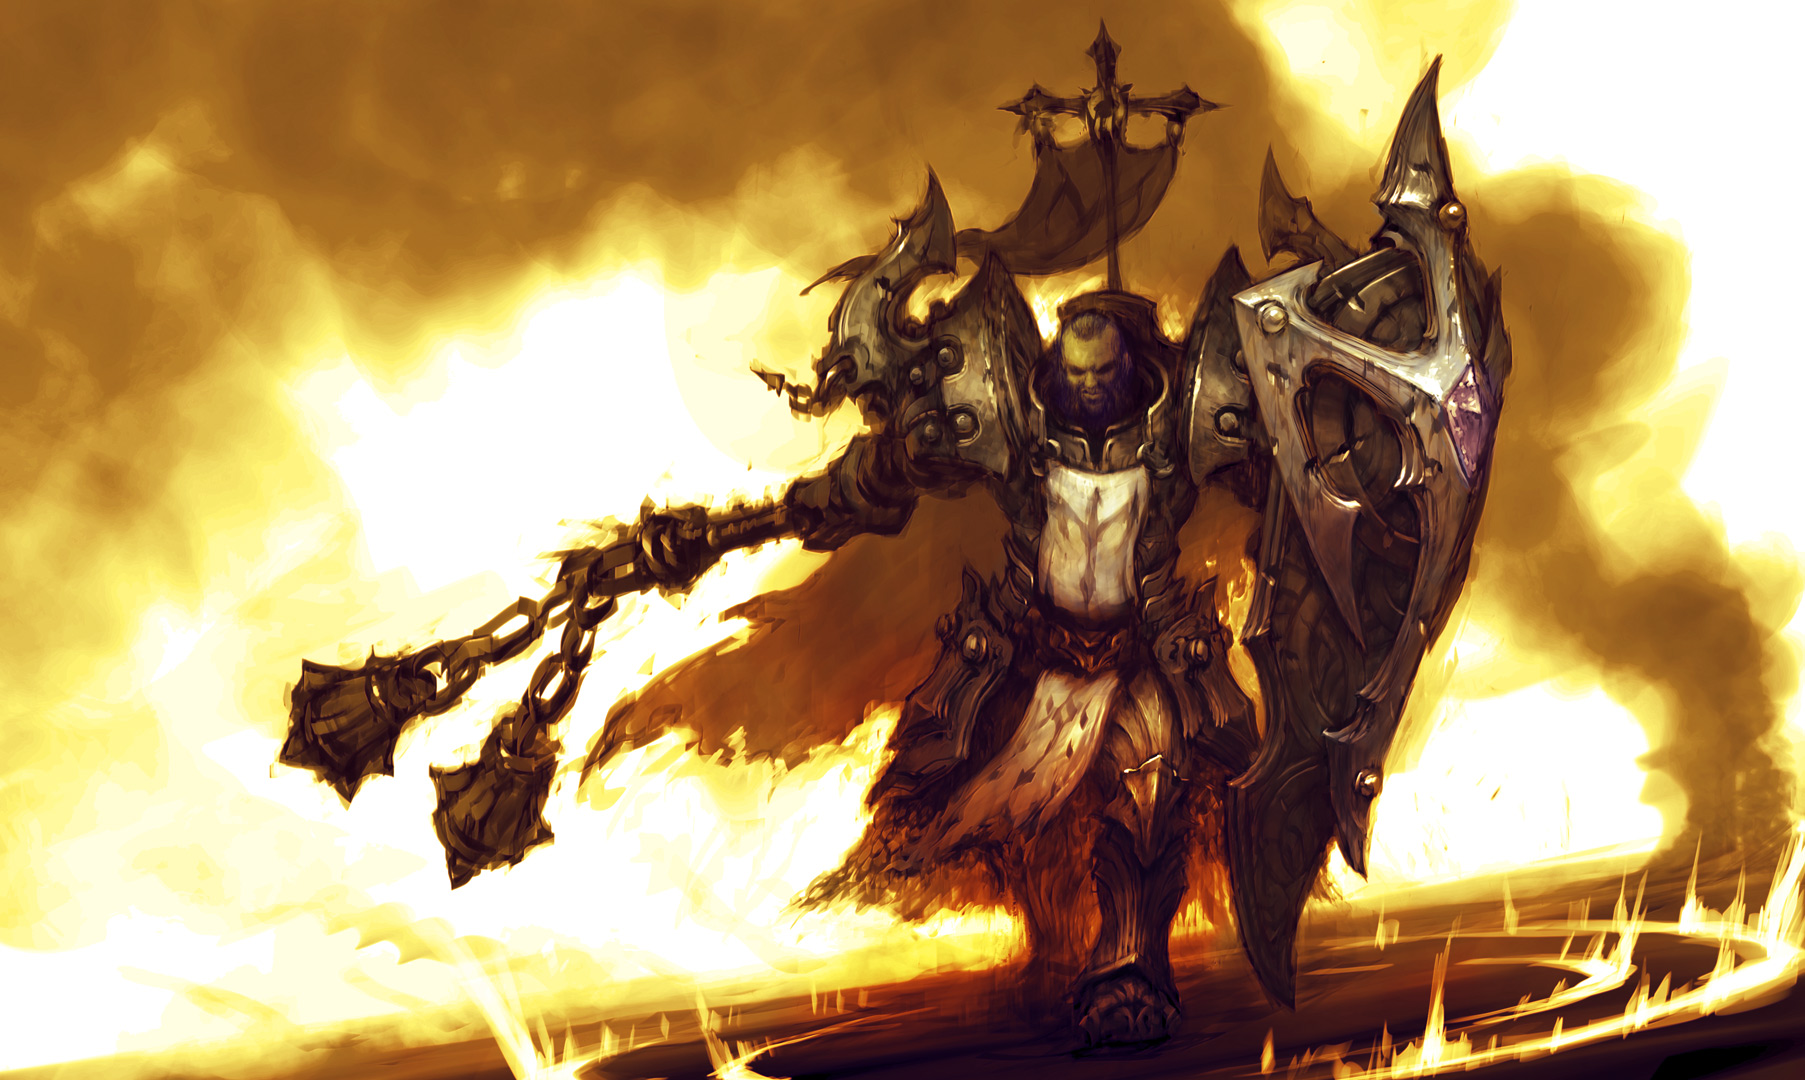 Diablo Iii Reaper Of Souls Concept Art Crusaderdark1